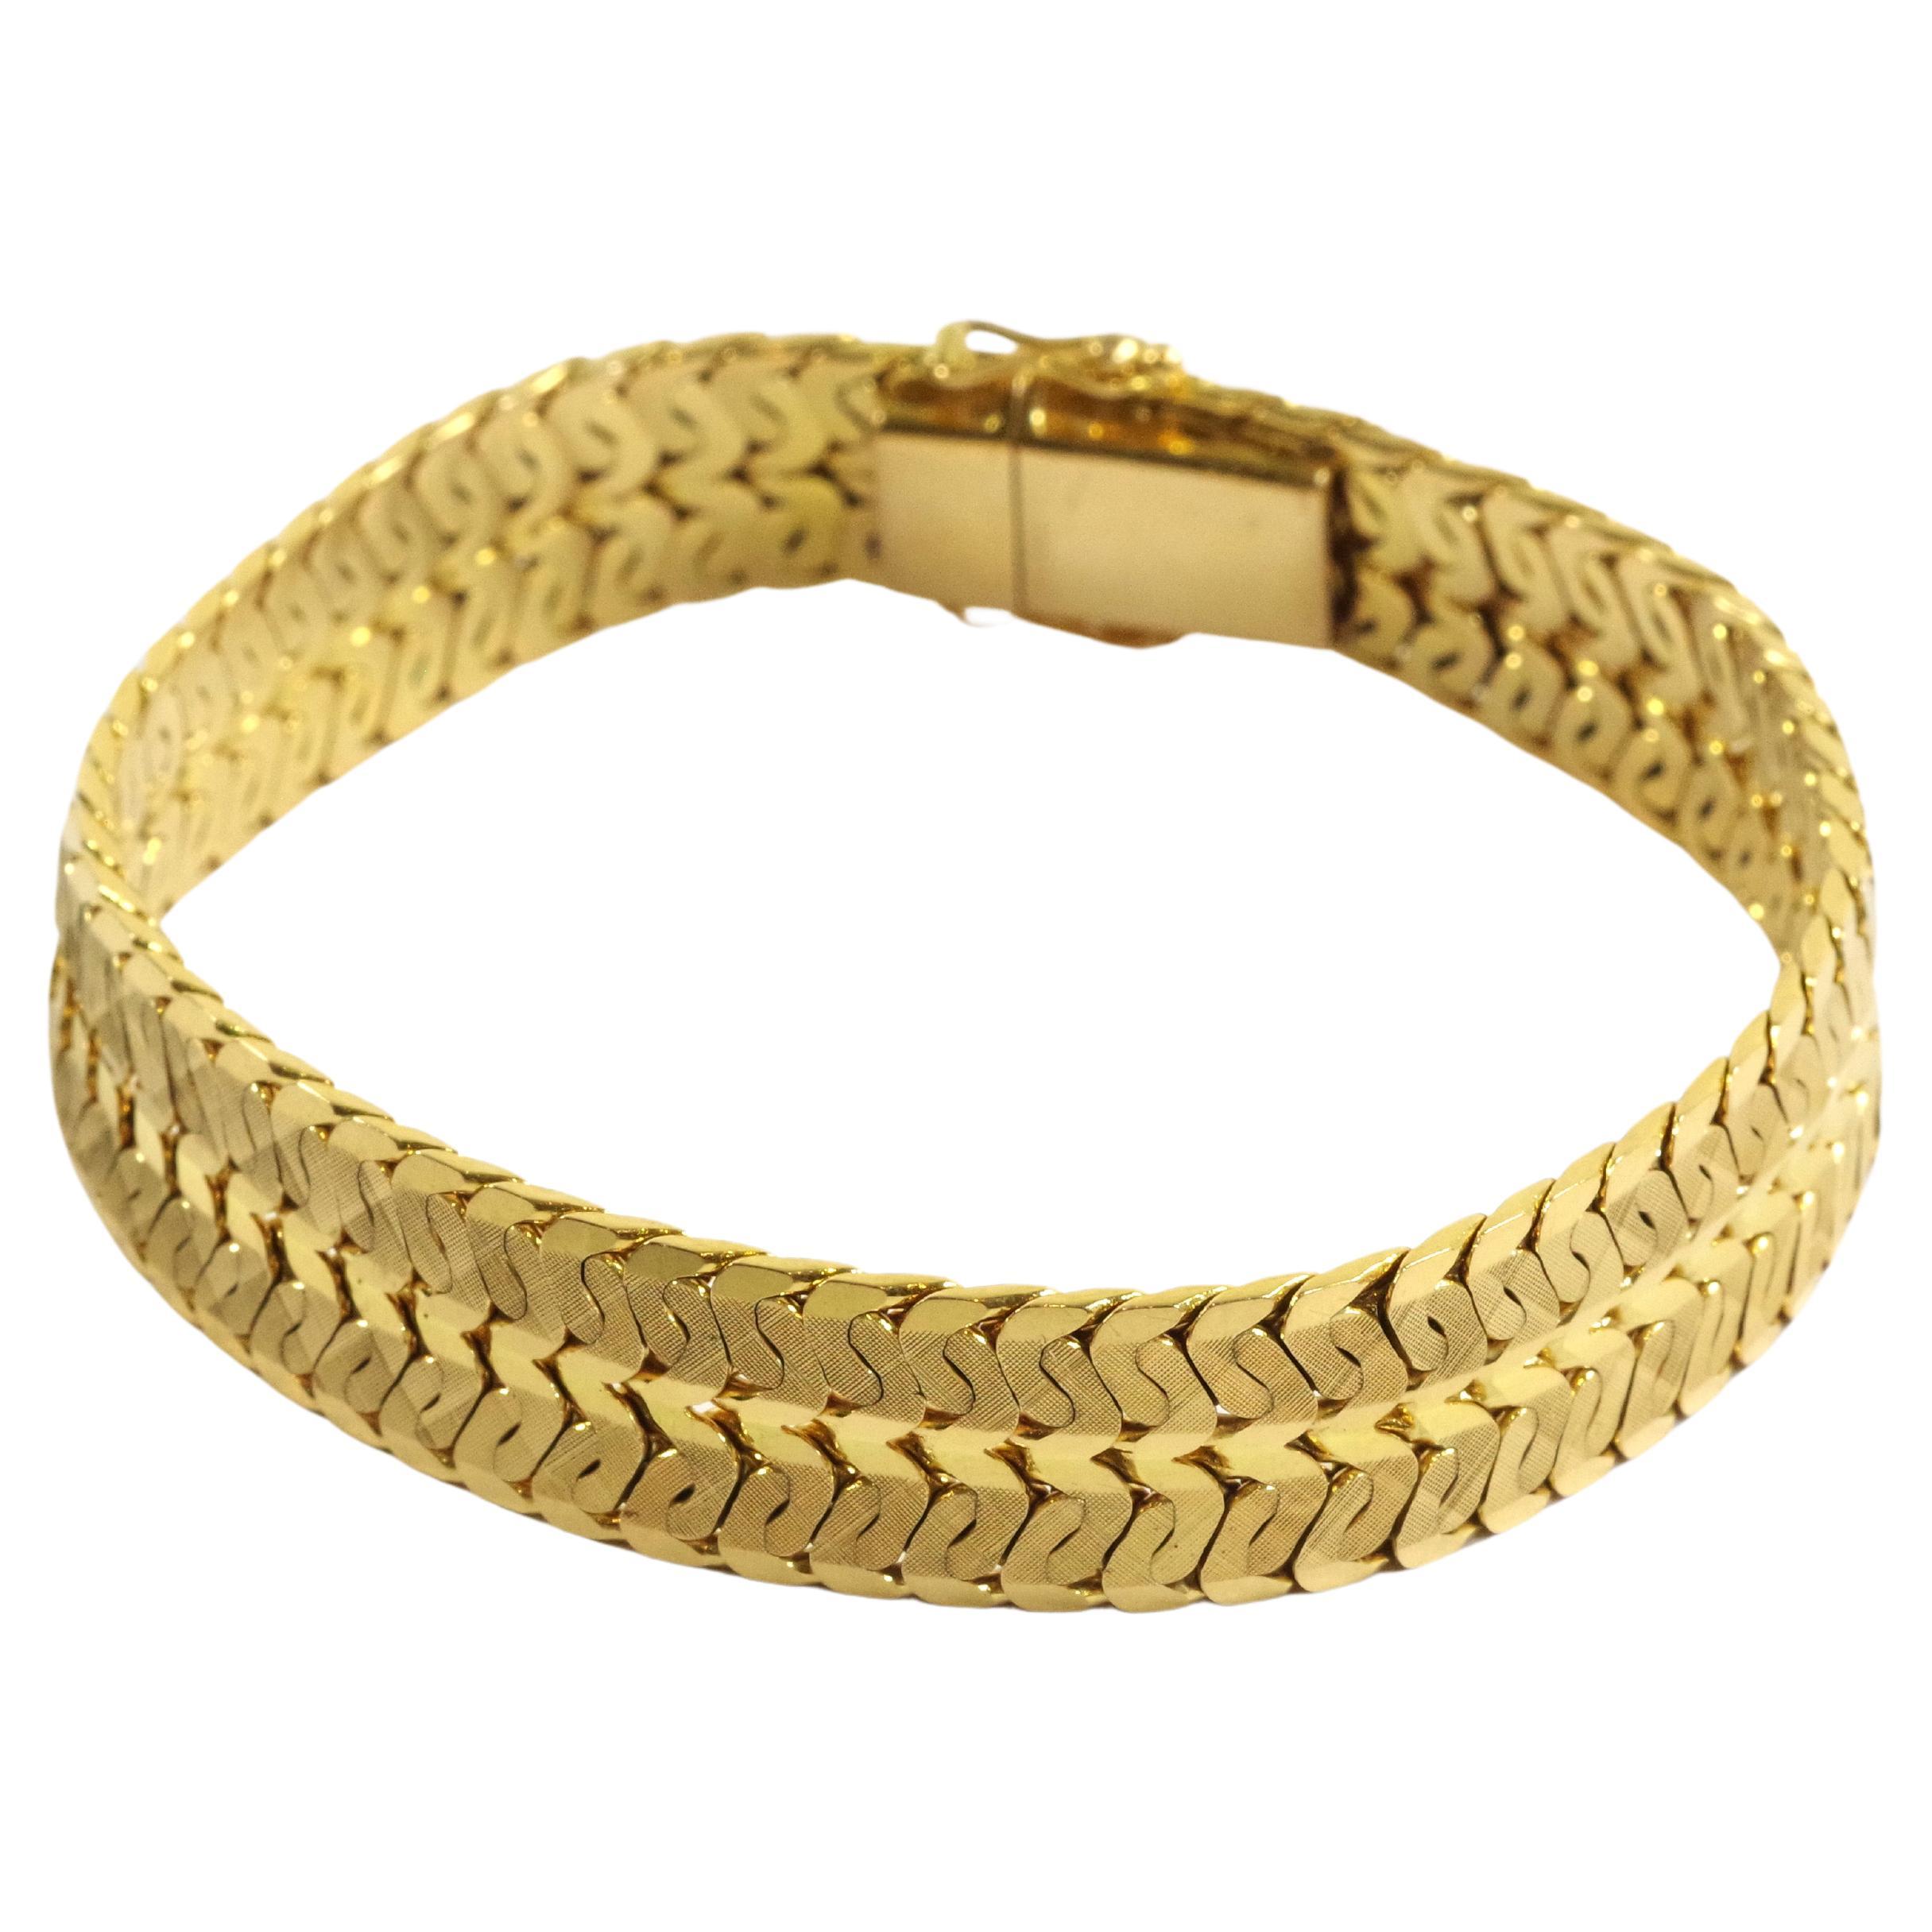 Flexible band bracelet in 18 karat gold, vintage band bracelet